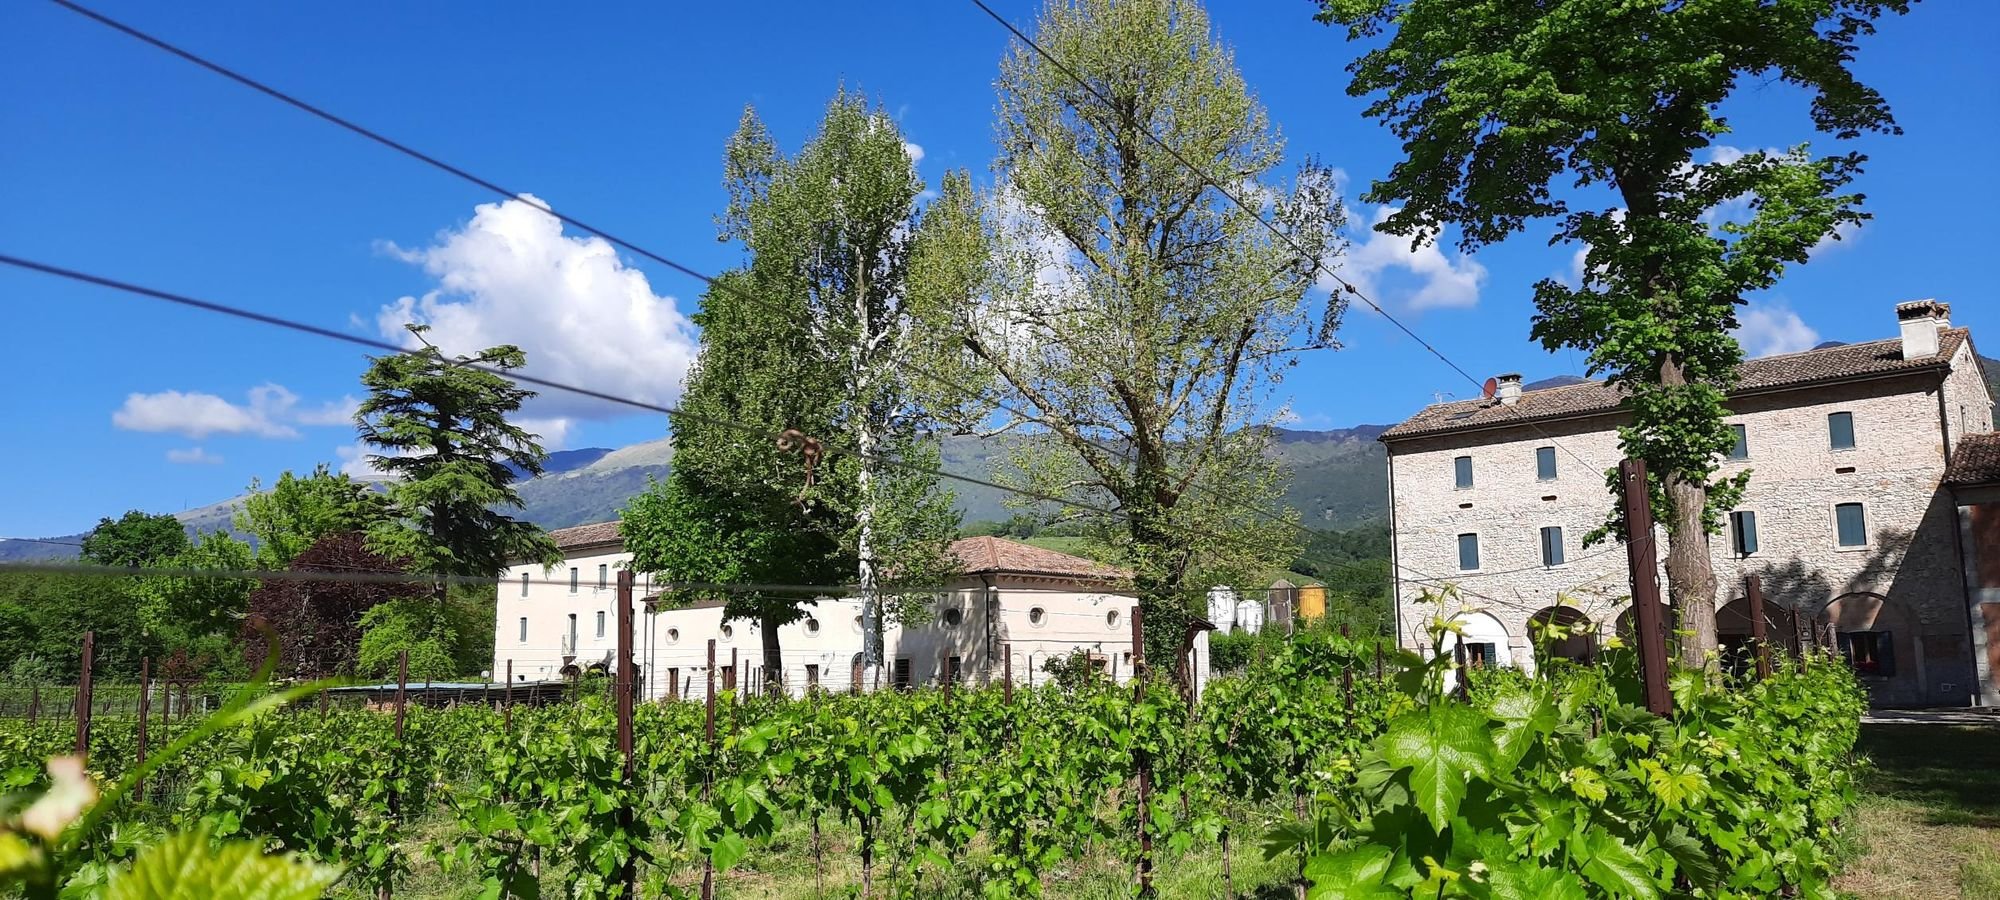 La Bella Follina, an agriturismo in the Prosecco Hills region of Italy. Photo: Elisa Ceccato.